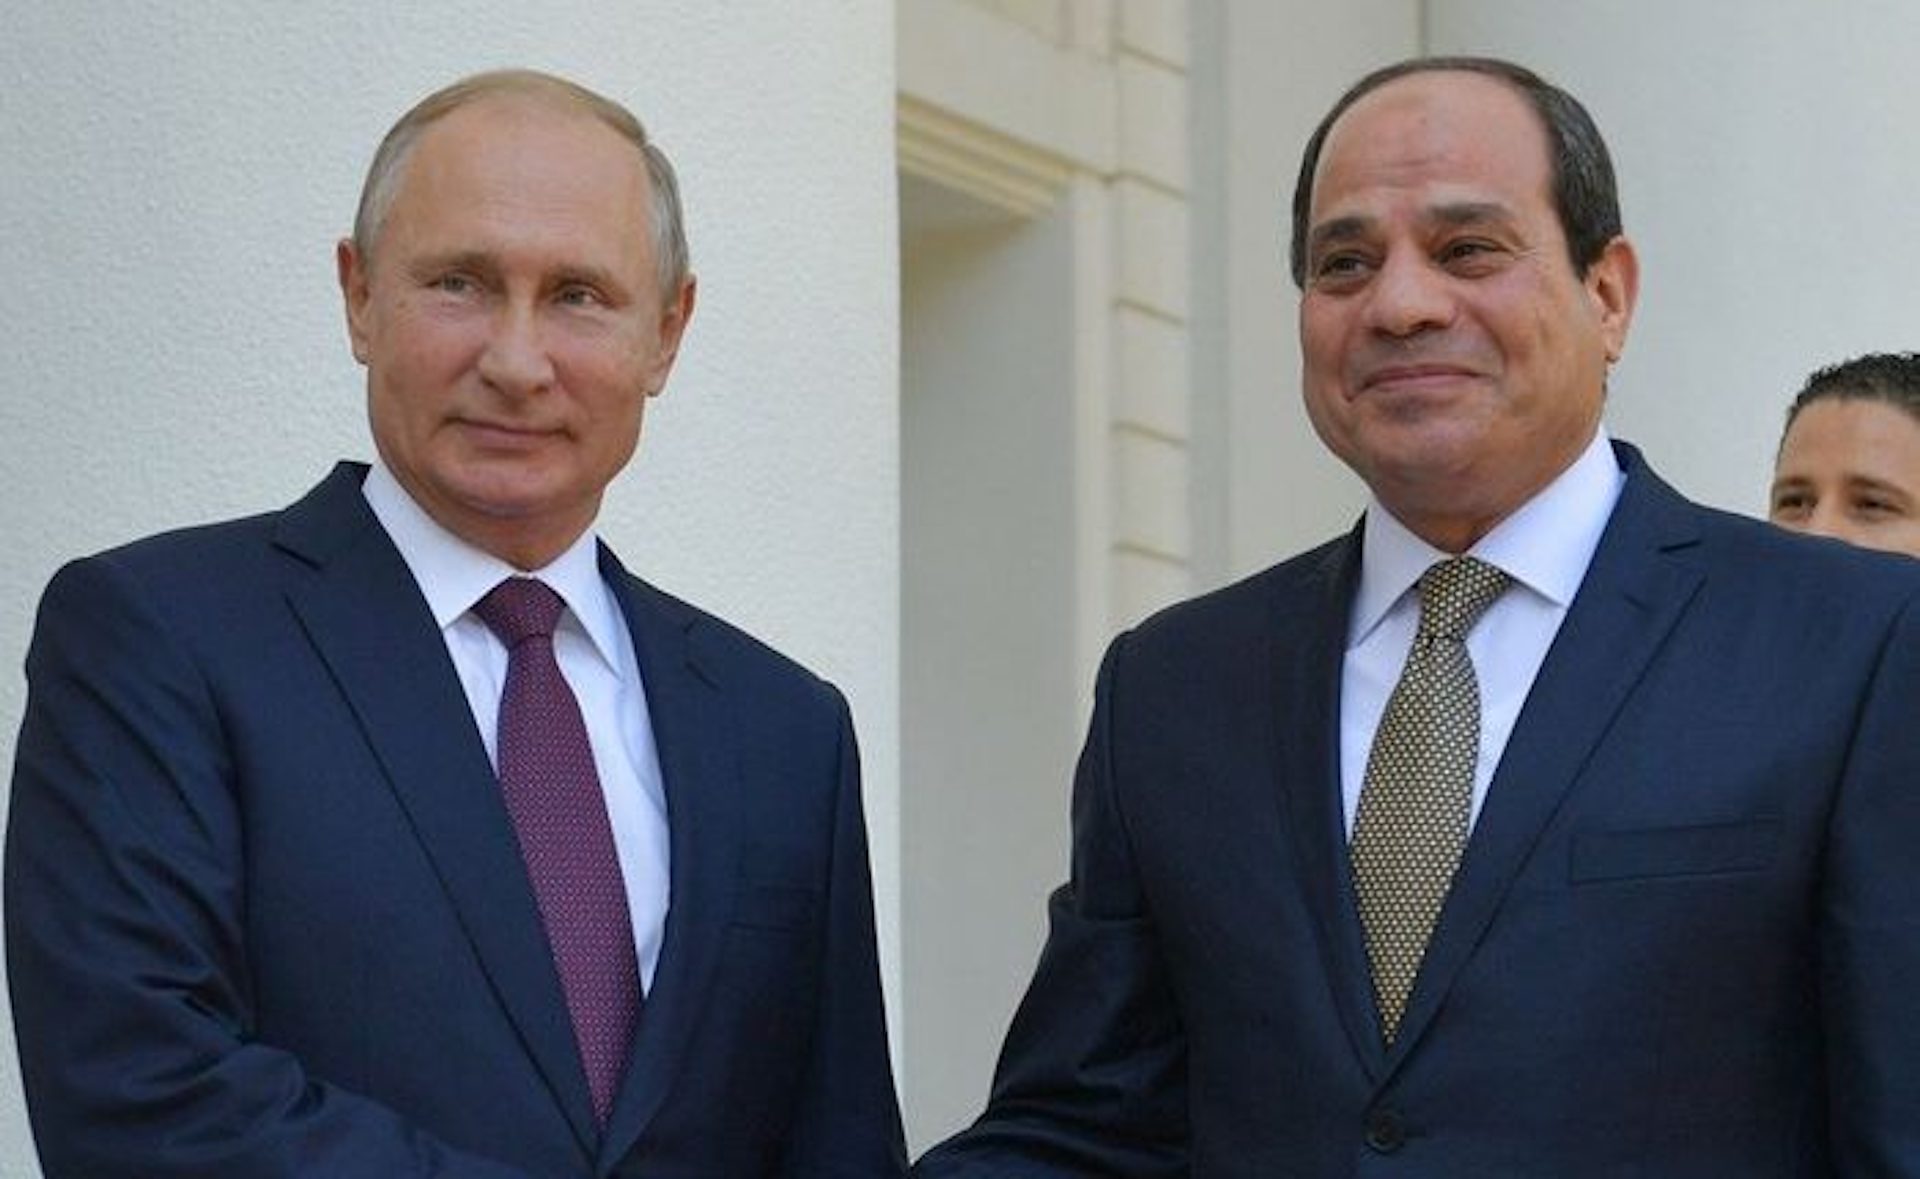 Al-Sisi and Putin discuss Ukrainian crisis on phone call